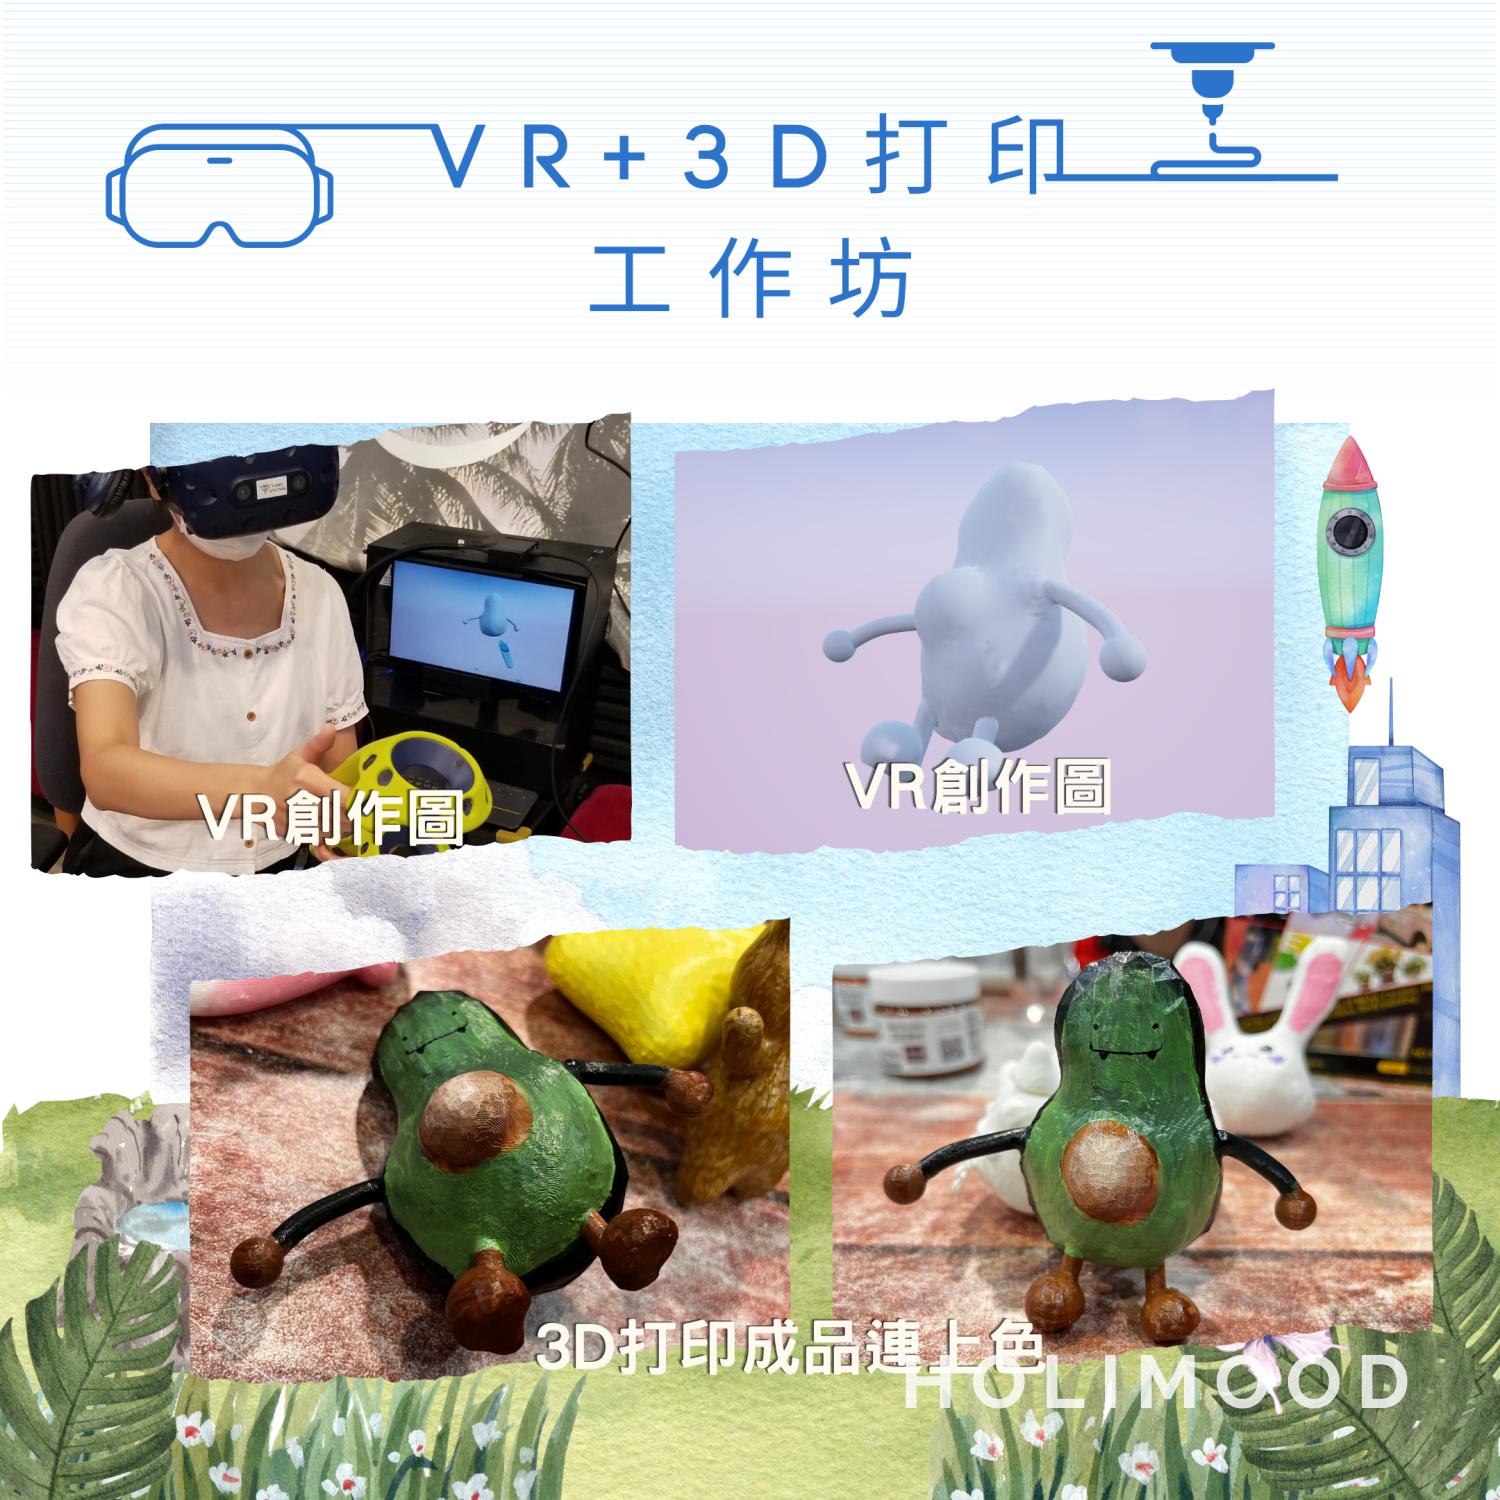 V-Owl Station VR Party 虛擬實境體驗站 VR+3D打印工作坊 6